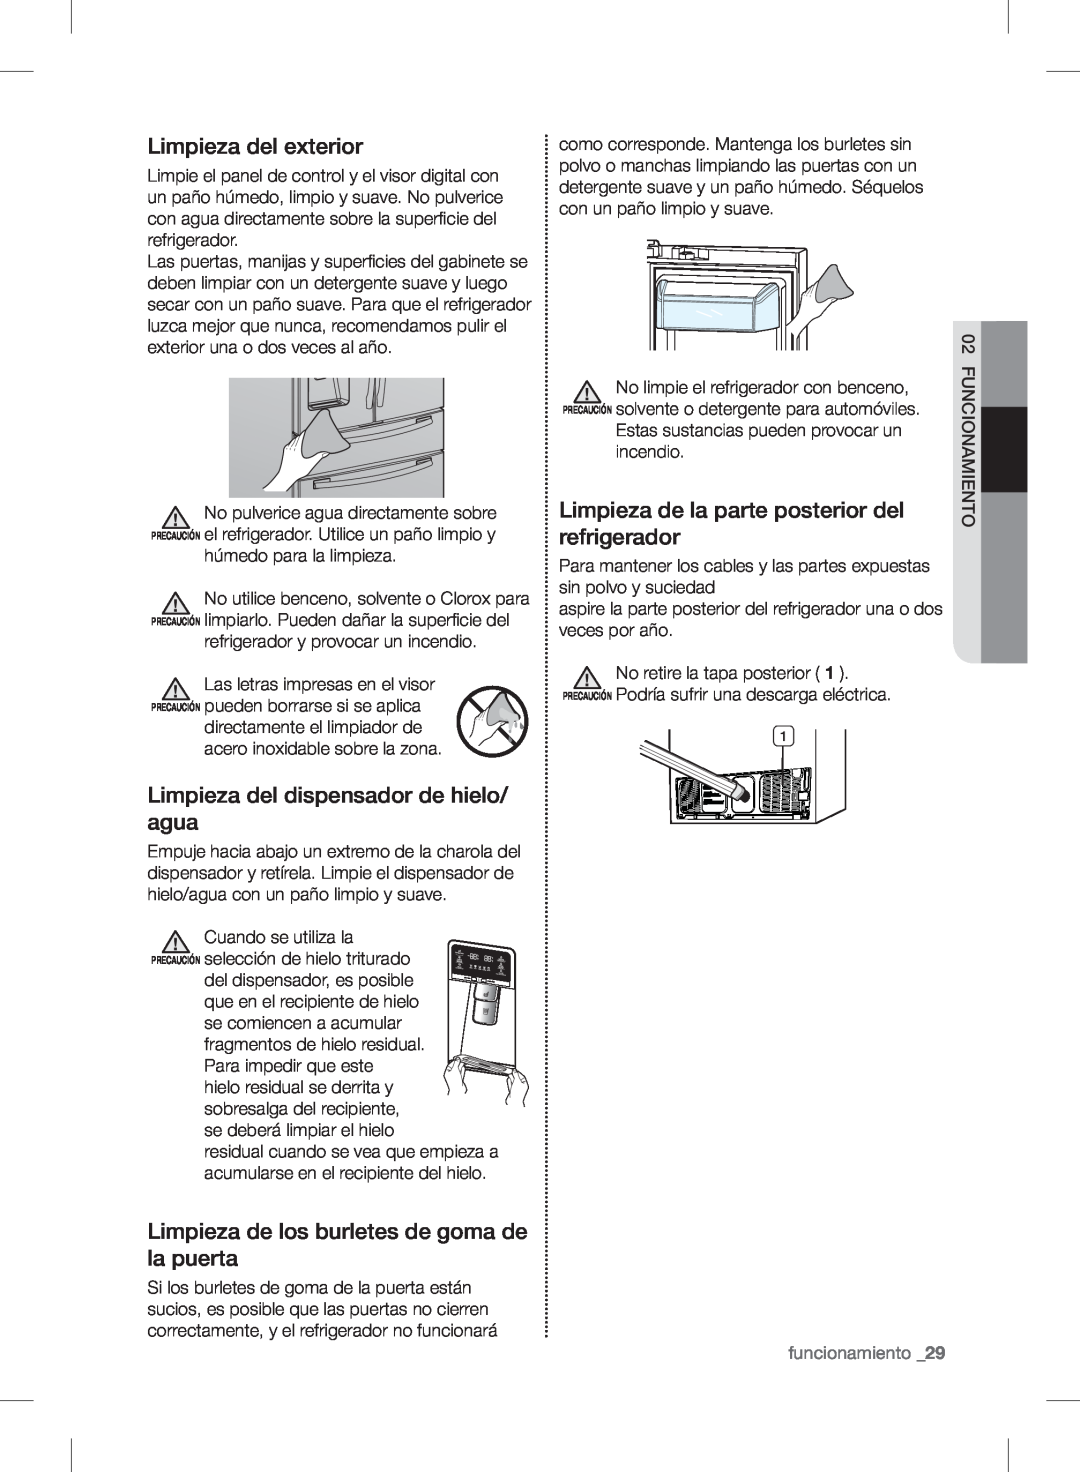 Samsung RF24FSEDBSR user manual Limpieza del exterior, Limpieza del dispensador de hielo/ agua, funcionamiento _29 